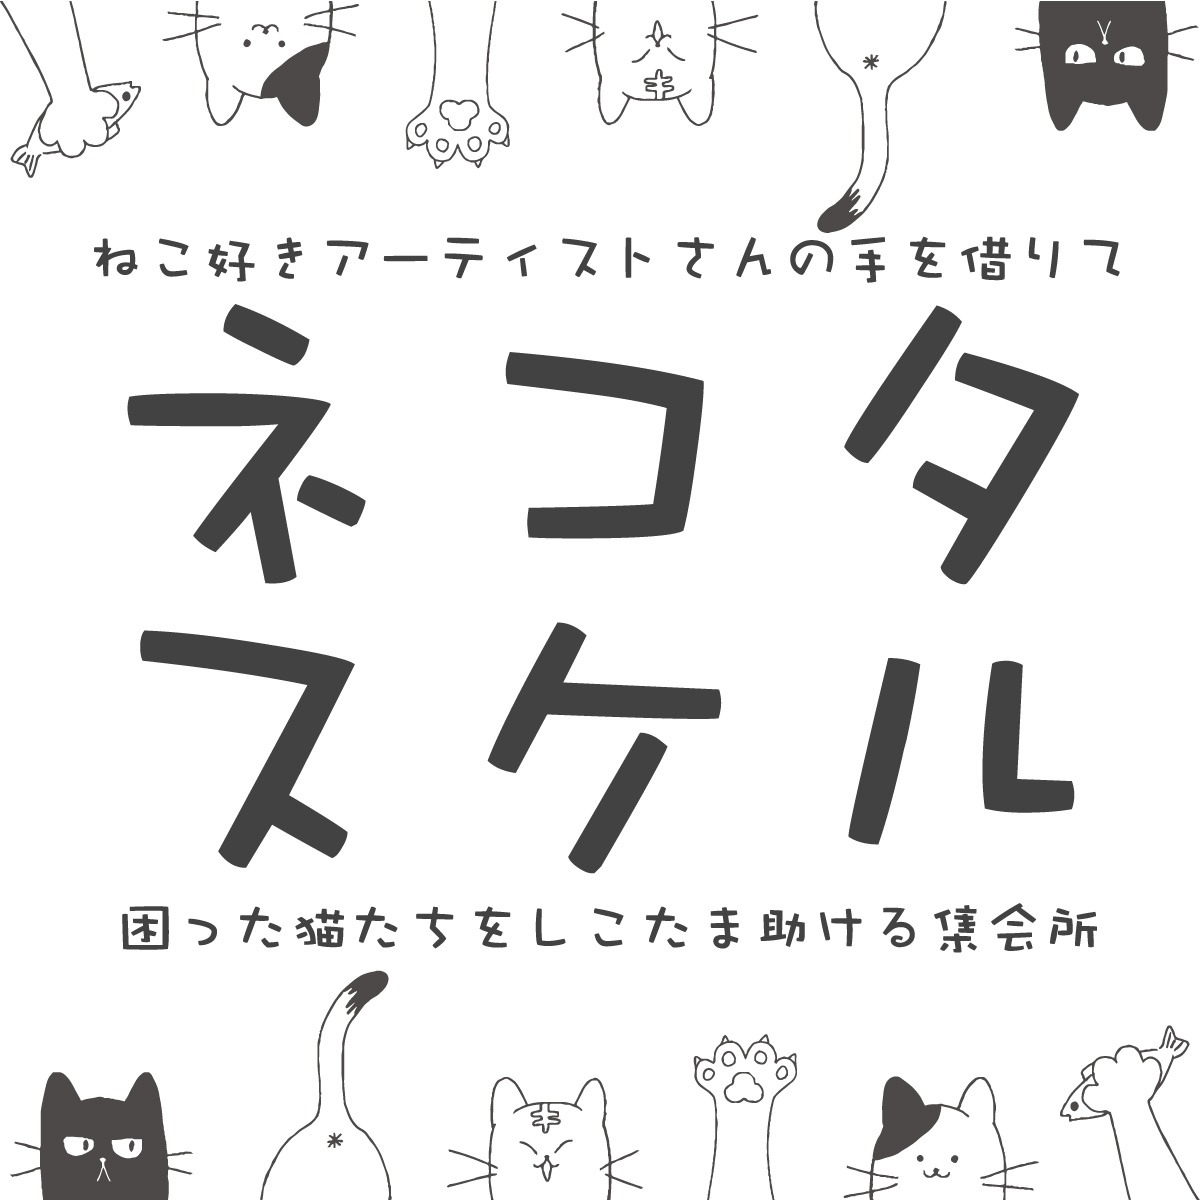 【ネコタスケル】ねこ好きアーティストさんの手を借りて困った猫たちをしこたま助ける集会所